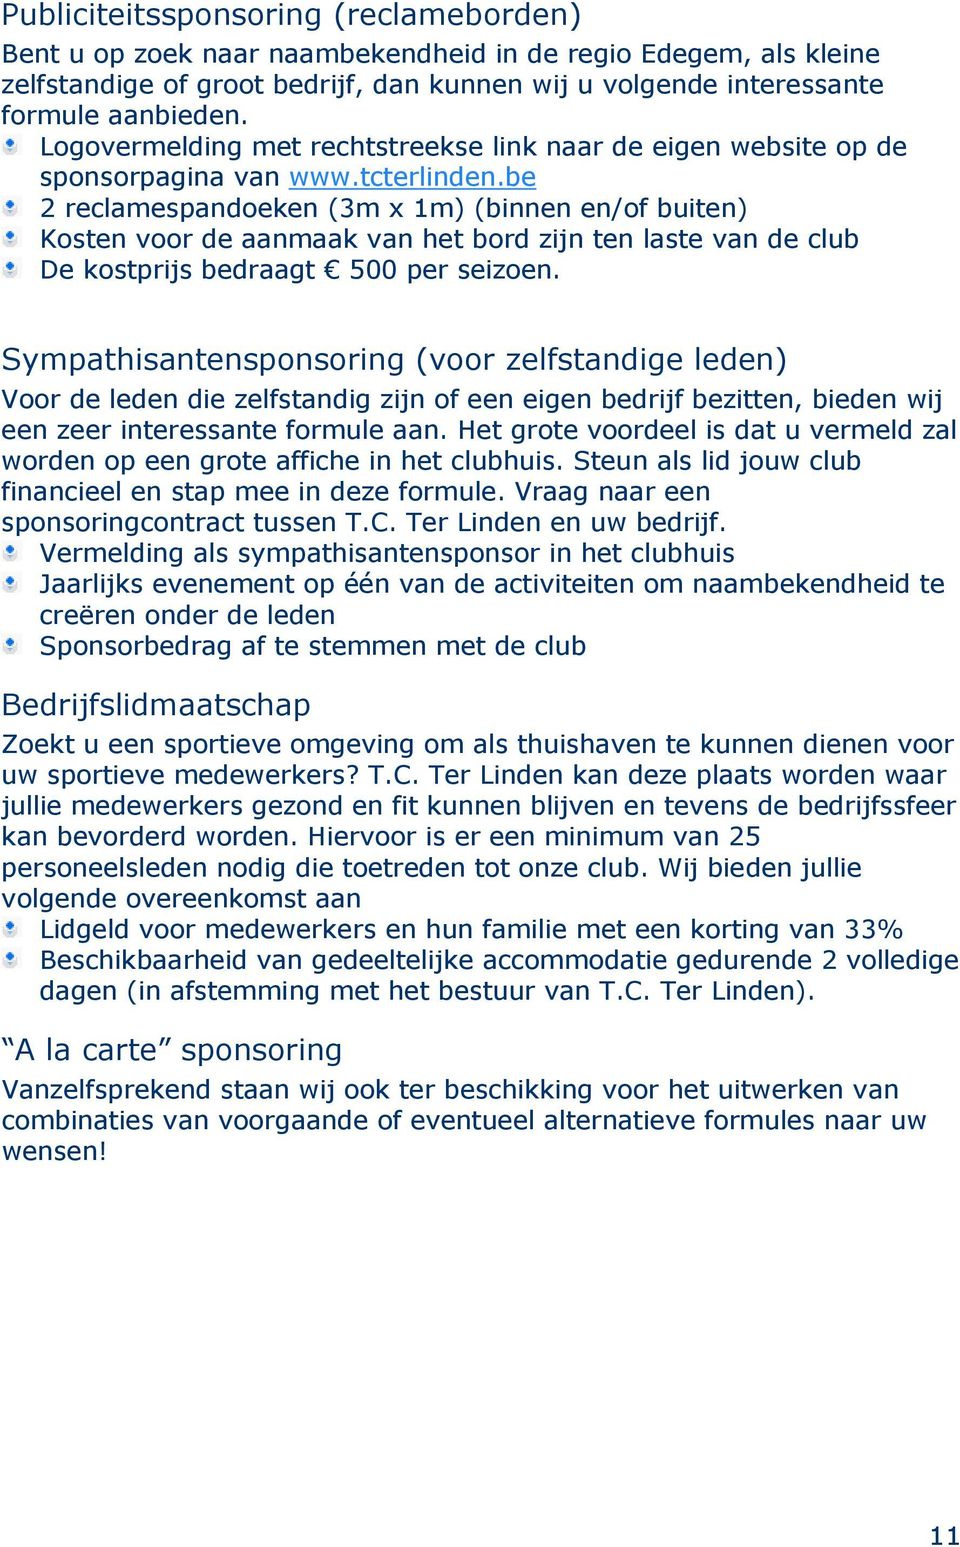 be 2 reclamespandoeken (3m x 1m) (binnen en/of buiten) Kosten voor de aanmaak van het bord zijn ten laste van de club De kostprijs bedraagt 500 per seizoen.